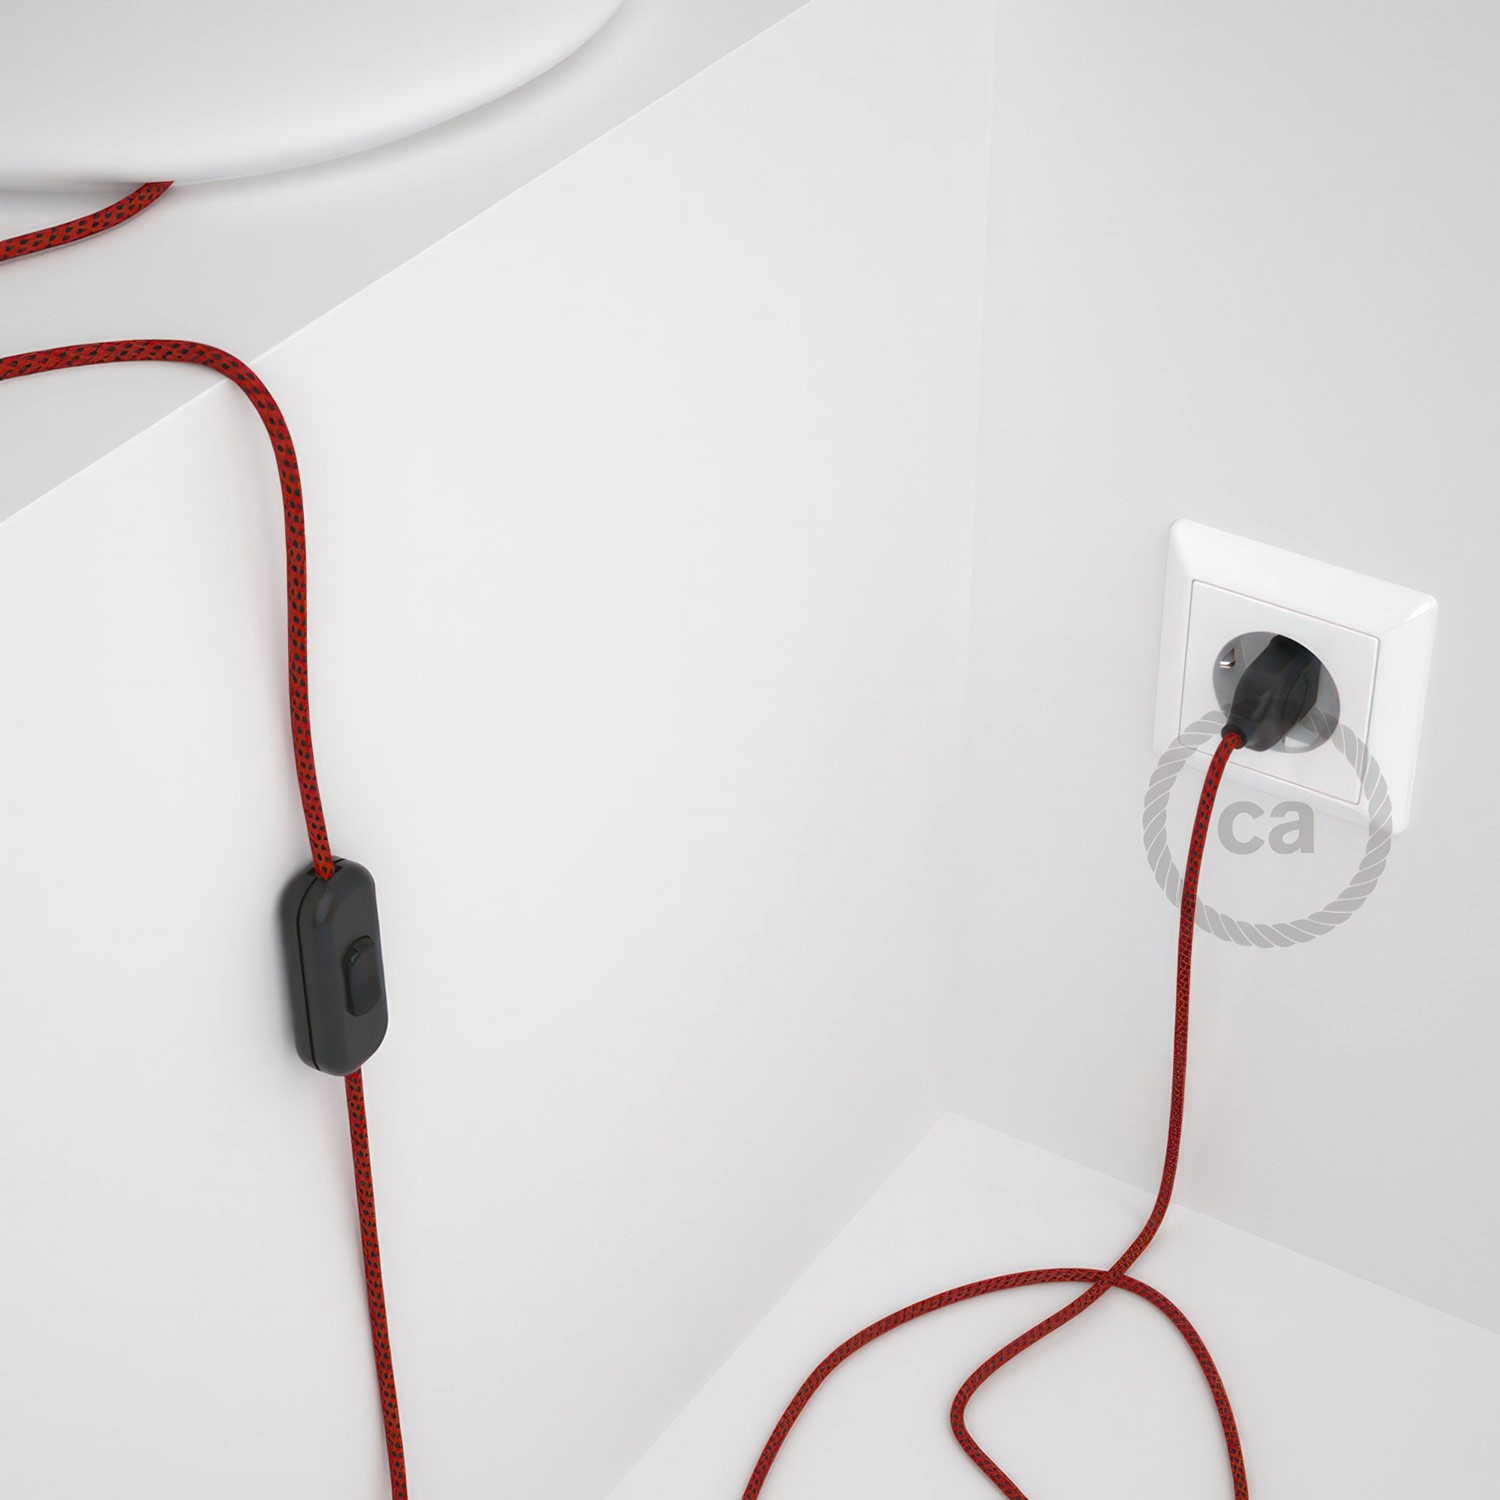 Cableado para lámpara, cable RT94 Efecto Seda Red Devil 1,8m. Elige tu el color de la clavija y del interruptor!